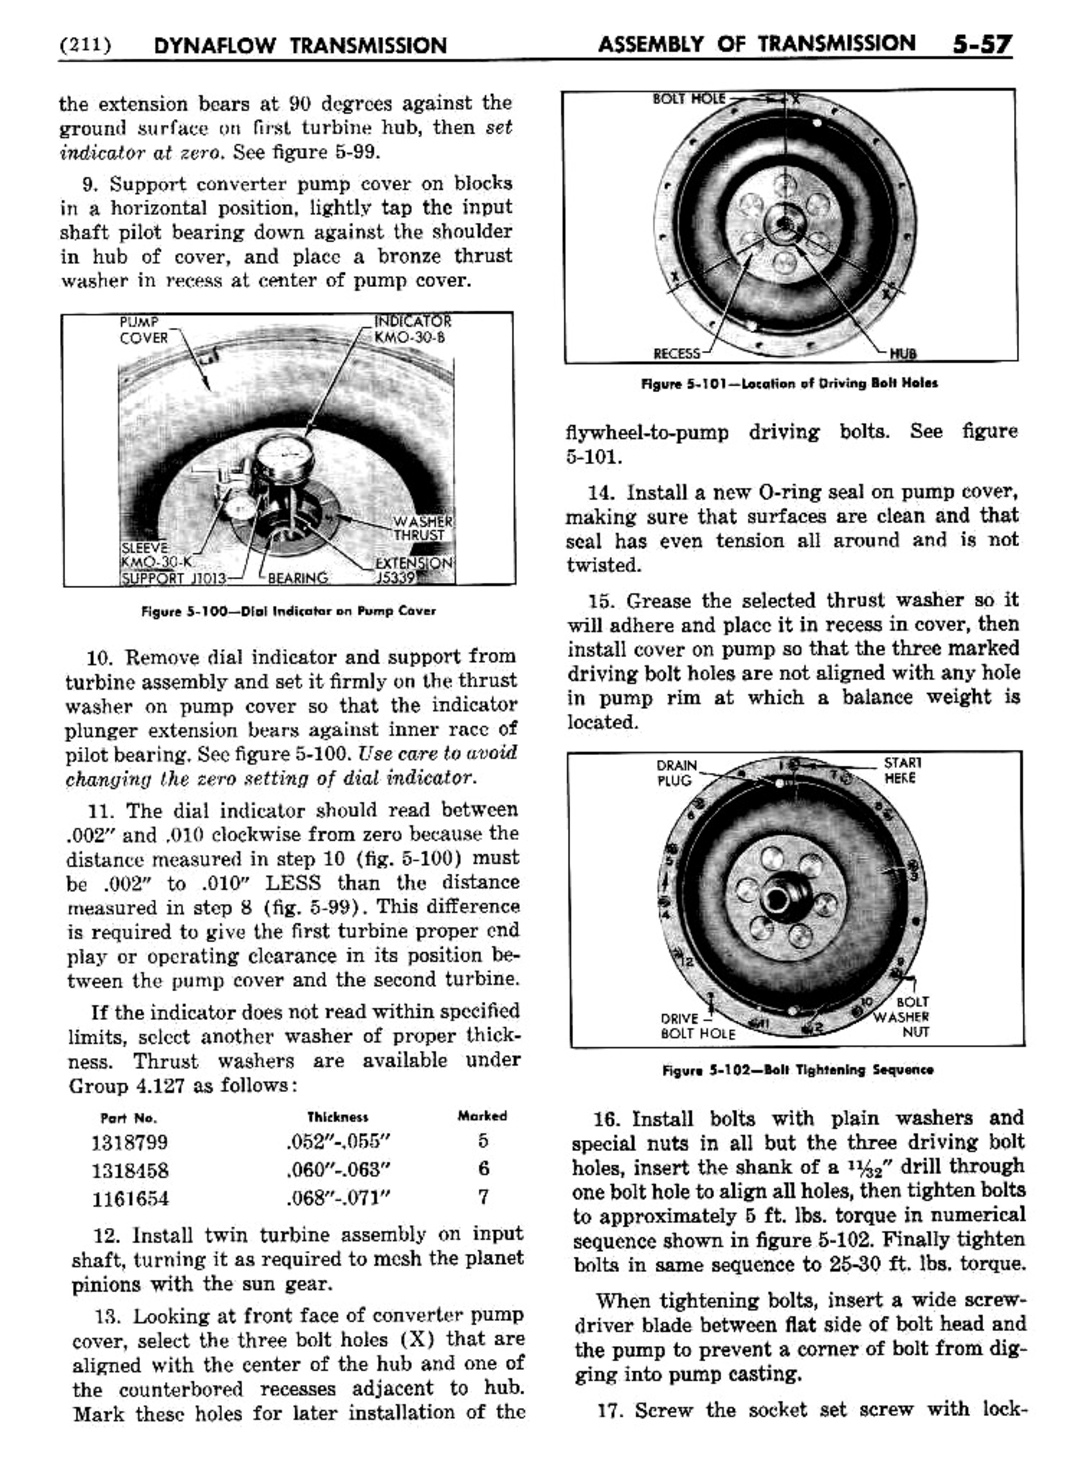 n_06 1954 Buick Shop Manual - Dynaflow-057-057.jpg